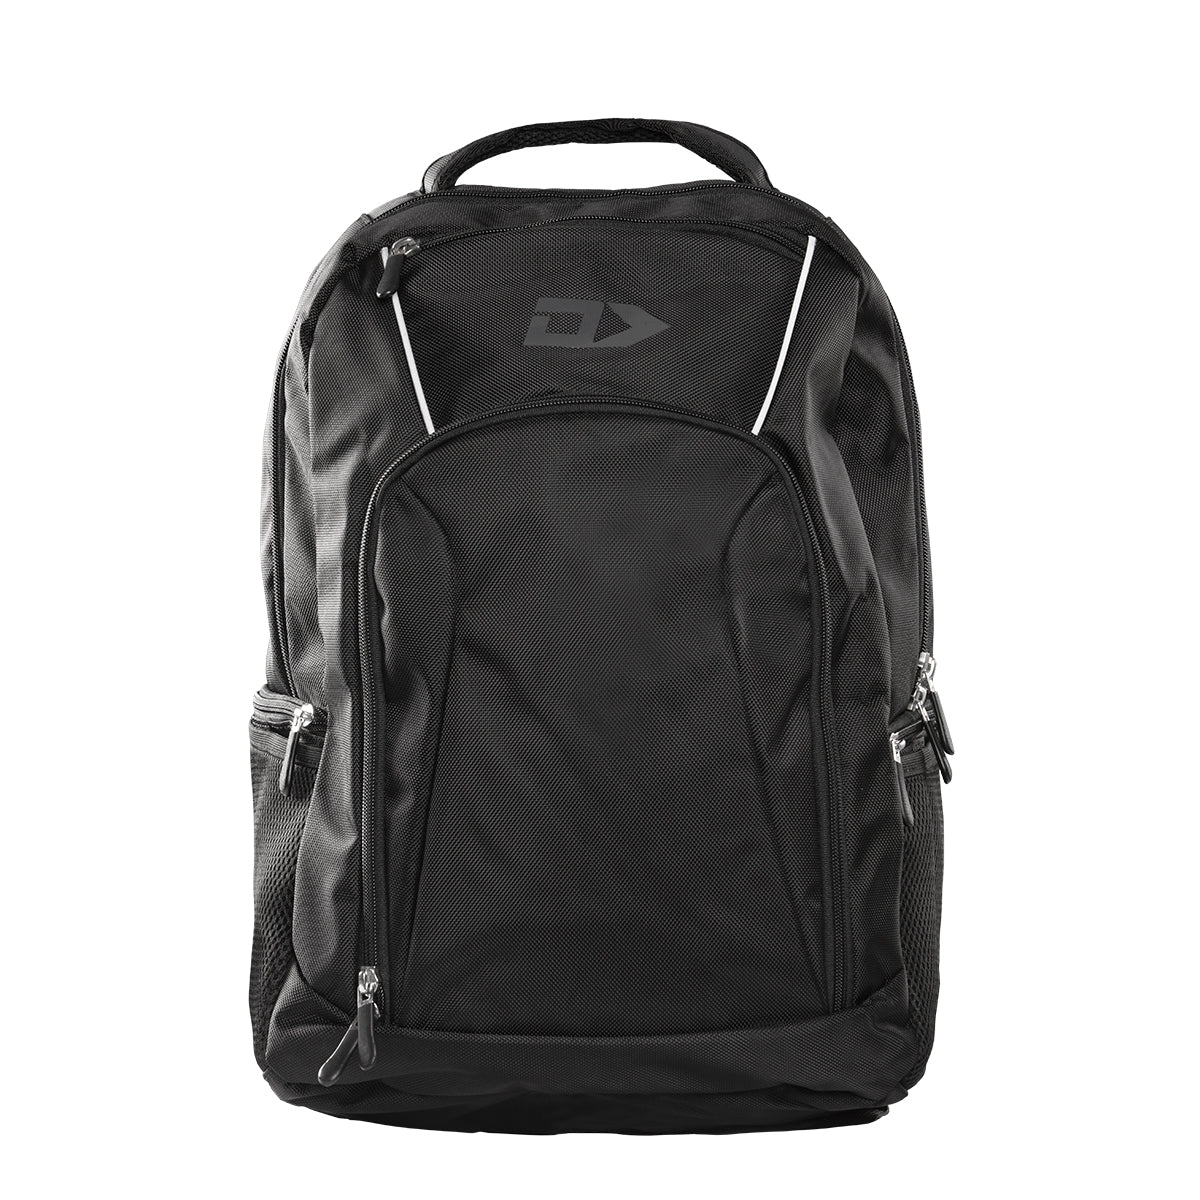 DS Black Backpack